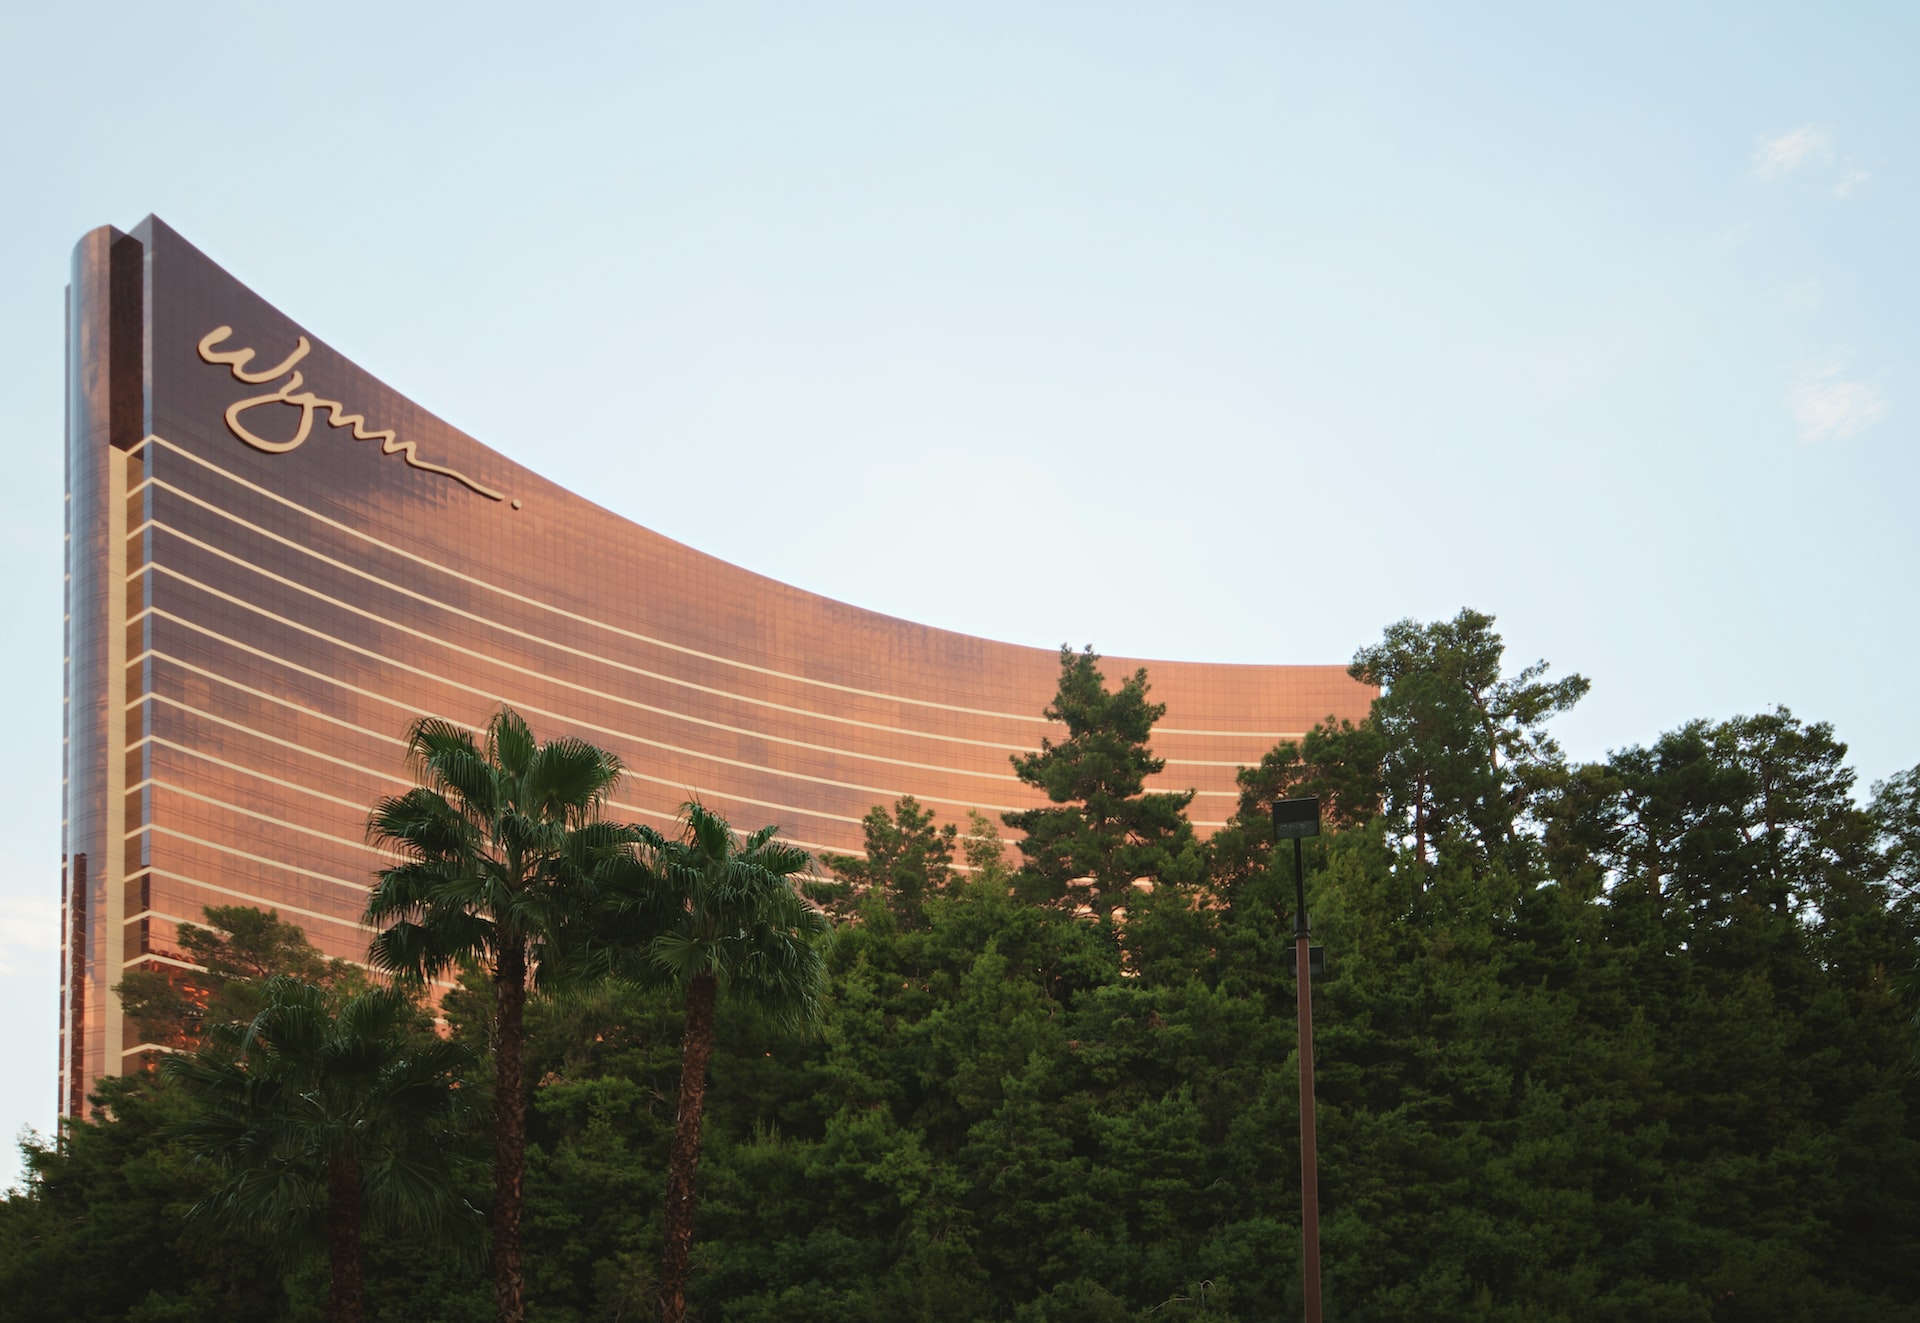 Wynn Las Vegas offers million dollar F1 ticket package for 2023 Las